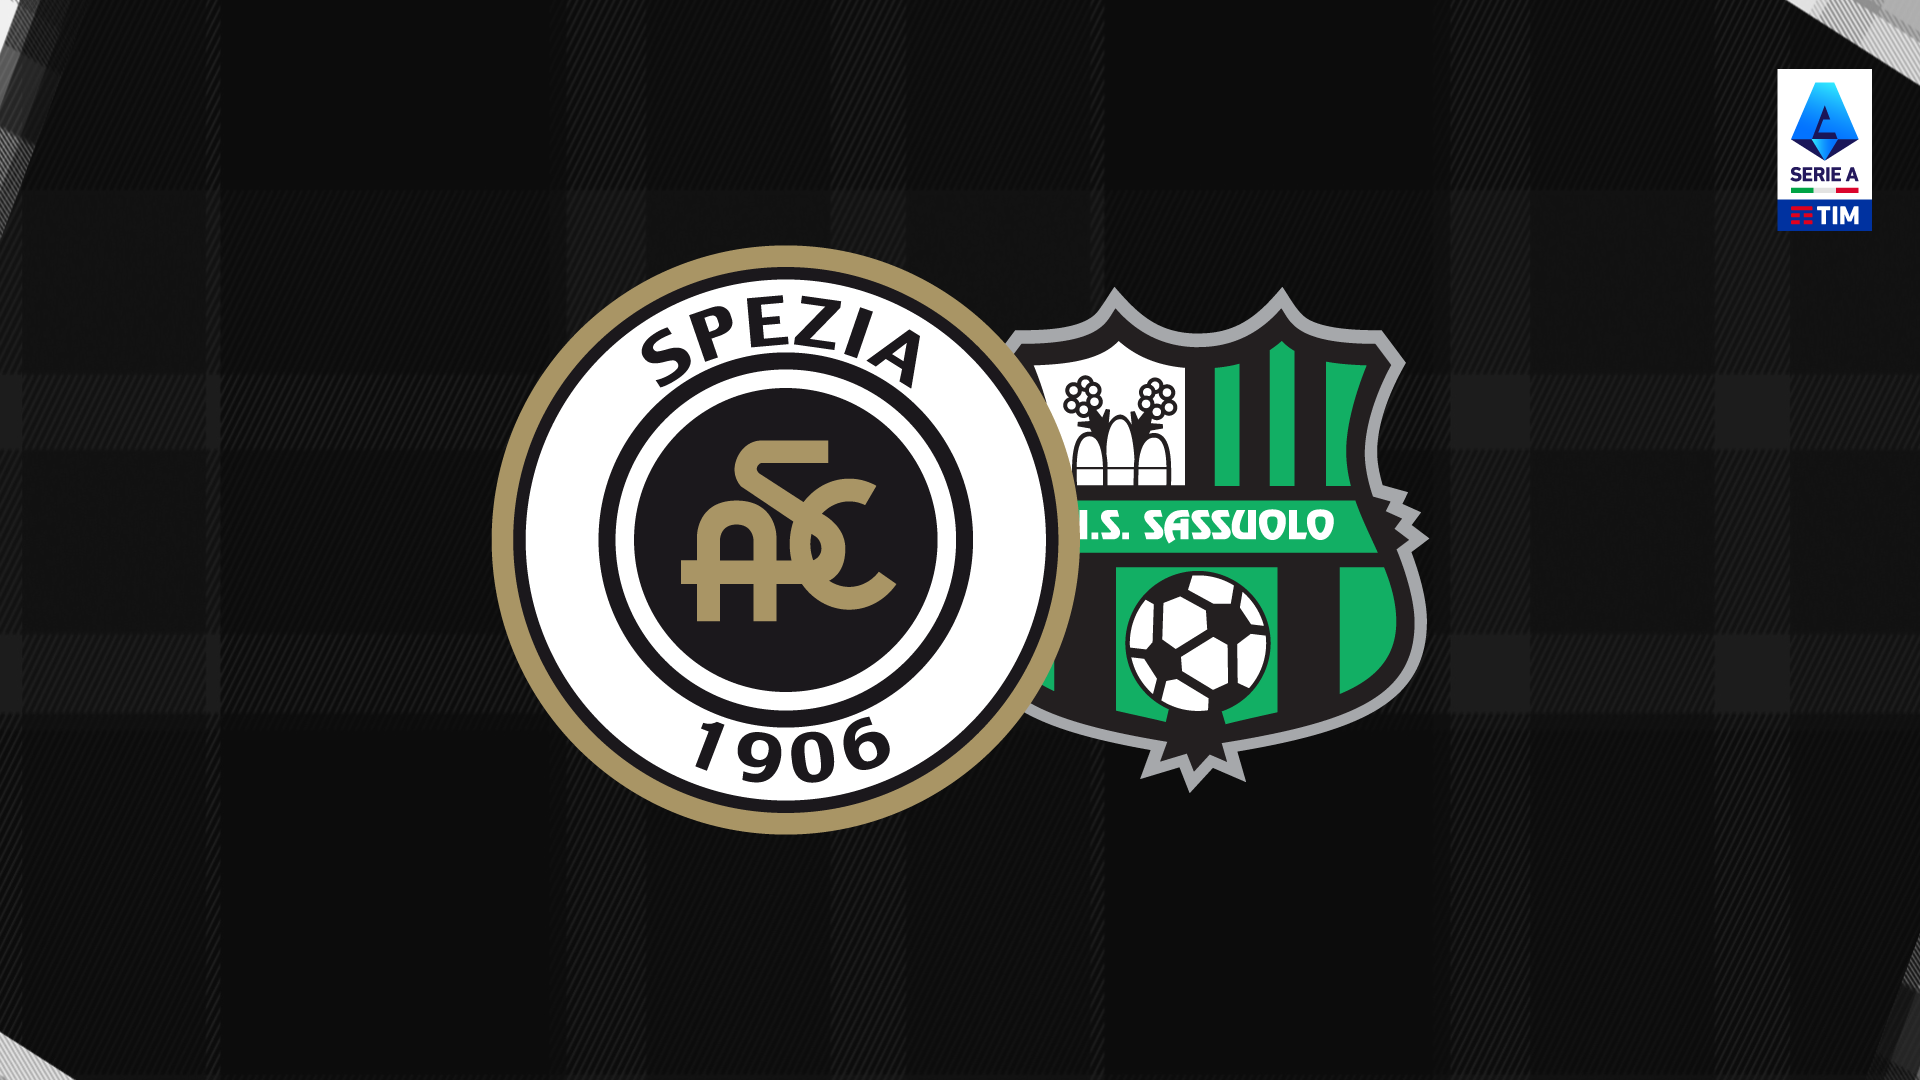 Spezia-Sassuolo: tickets available